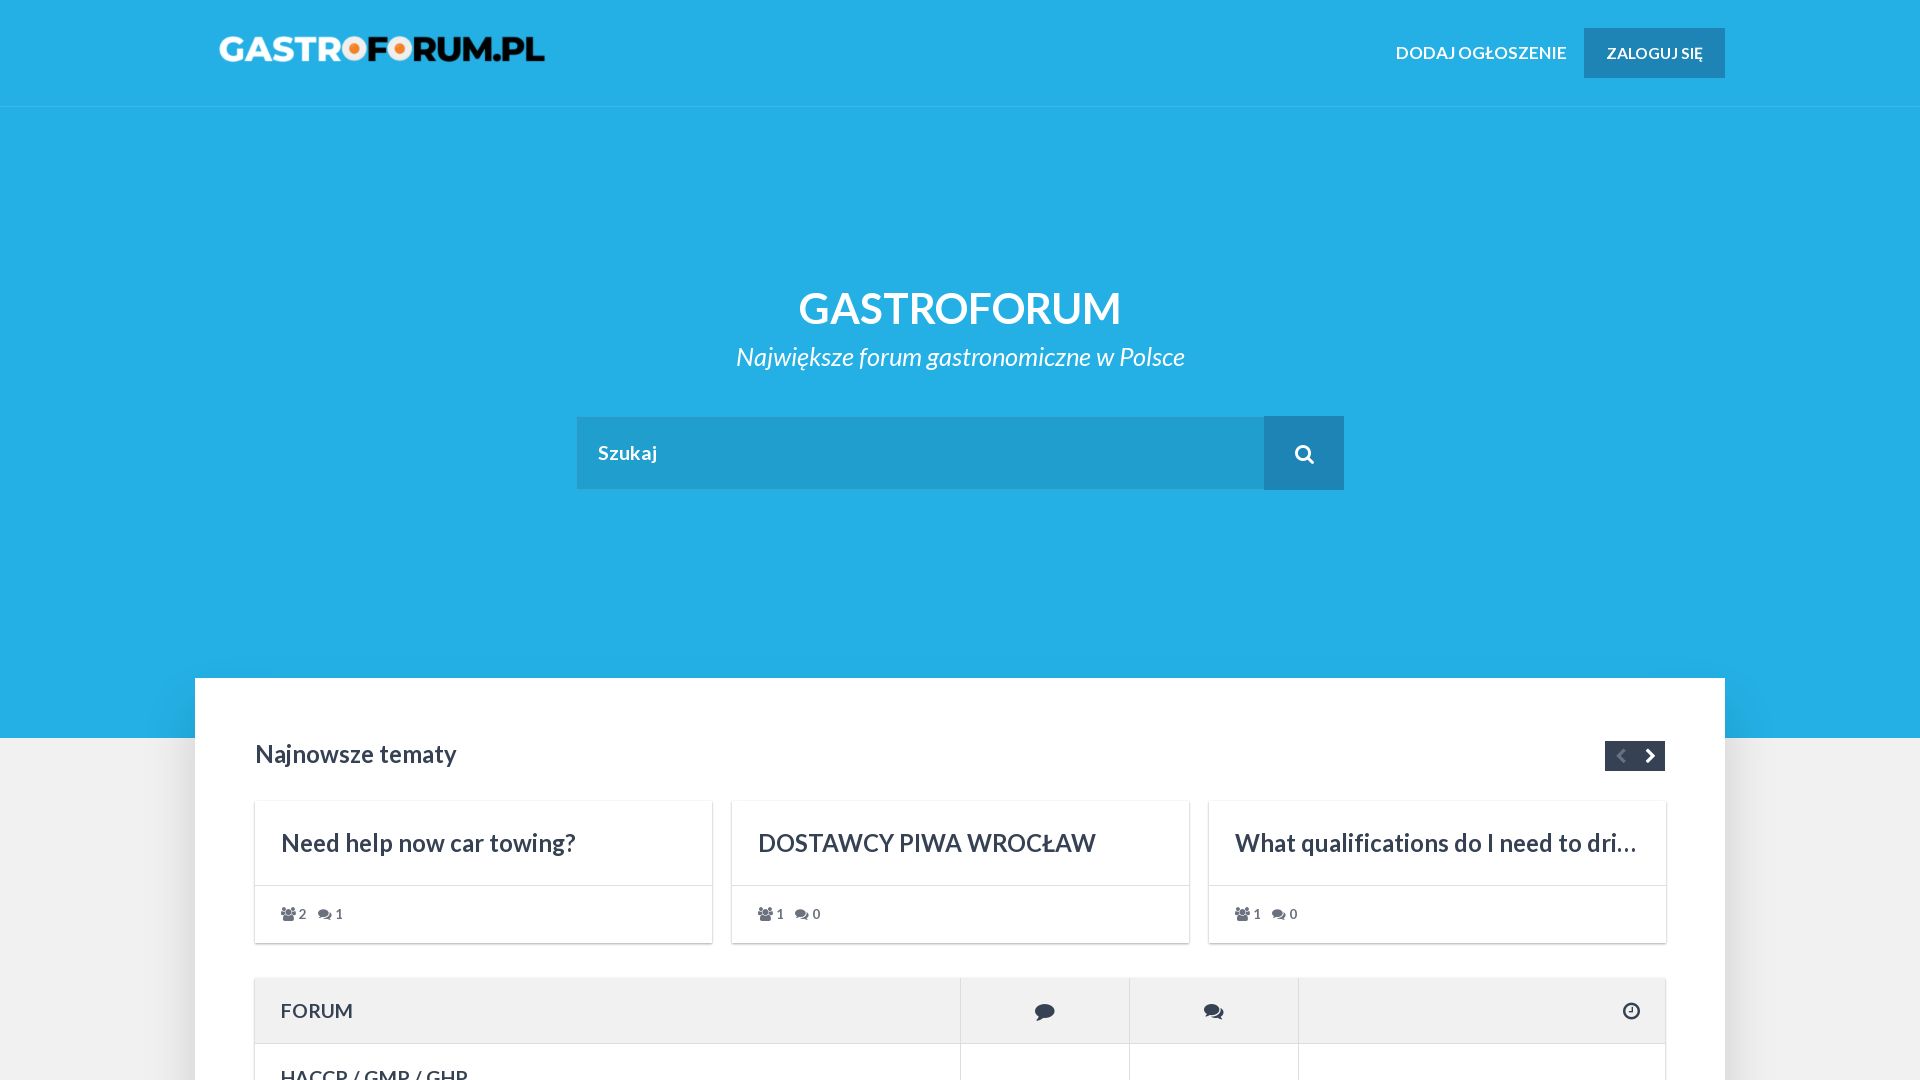 网站状态 gastroforum.pl 是  在线的